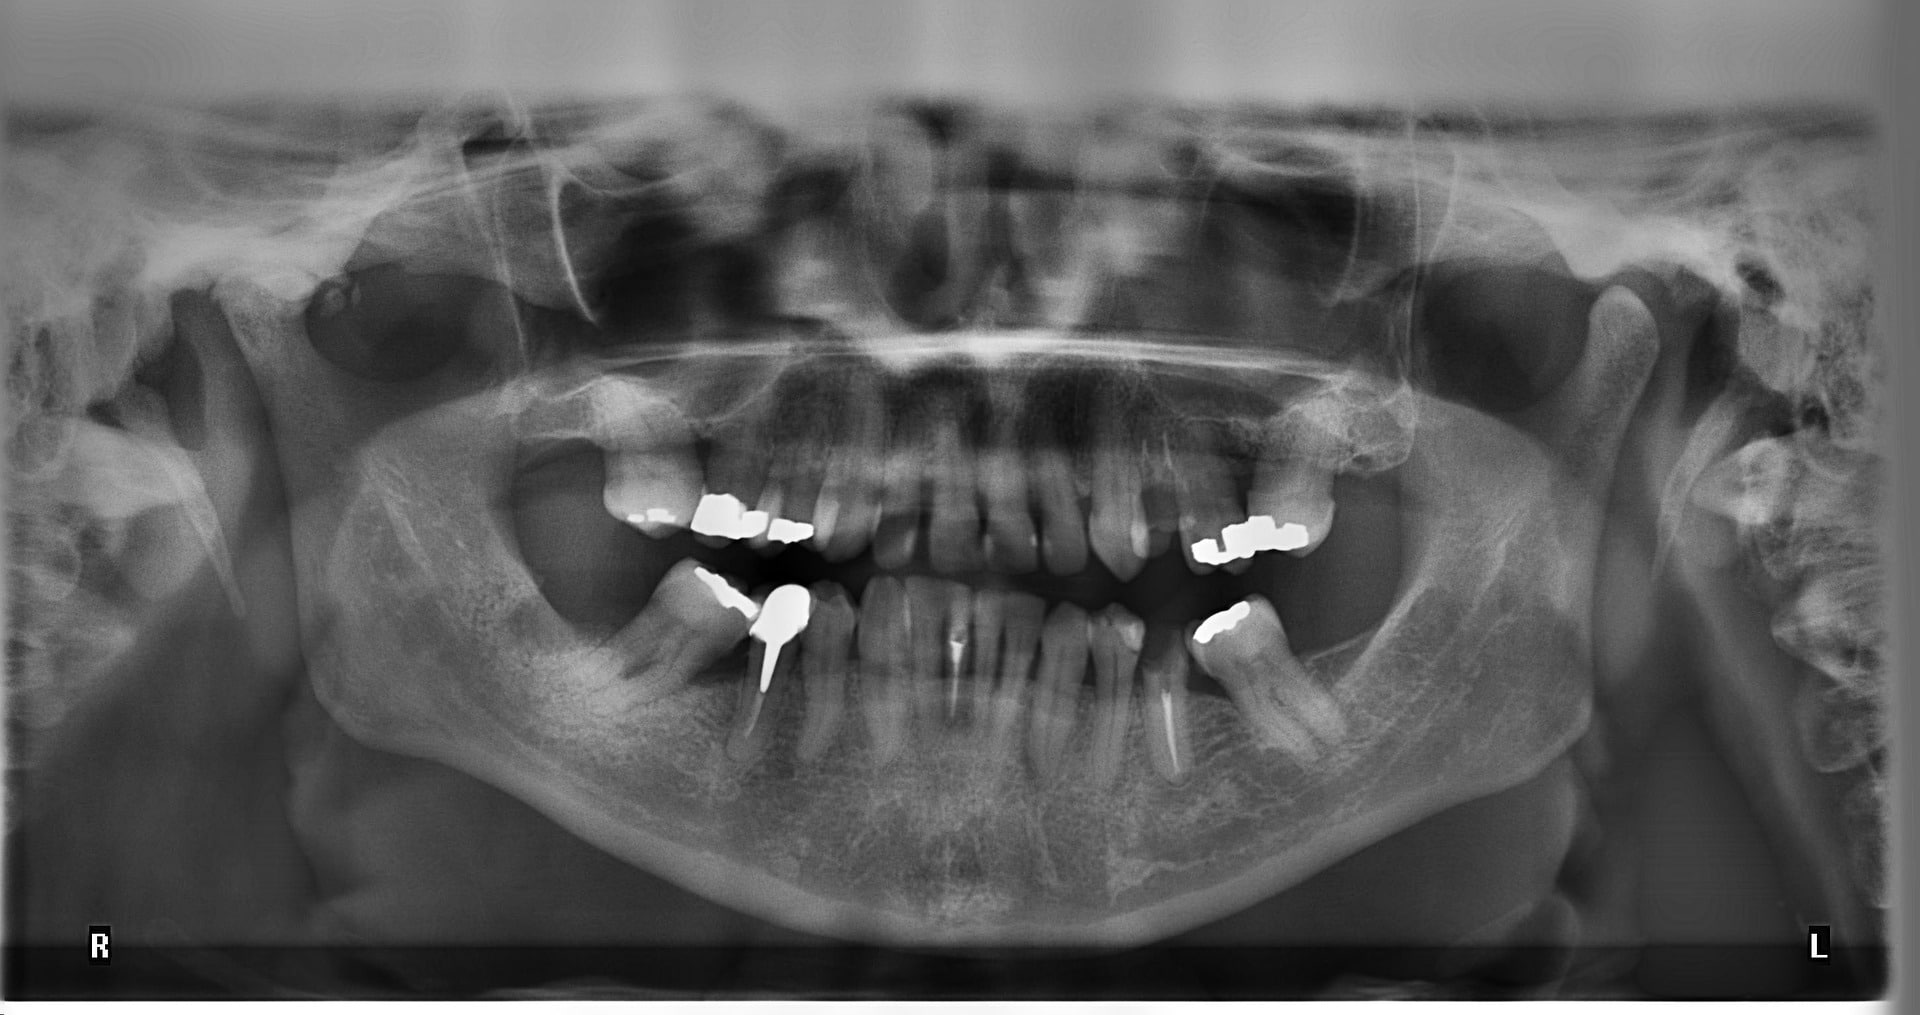 solely The trail hit motor depășire taxa de școlarizare aparat radiologie dentara panoramica  cadou erotic căzut